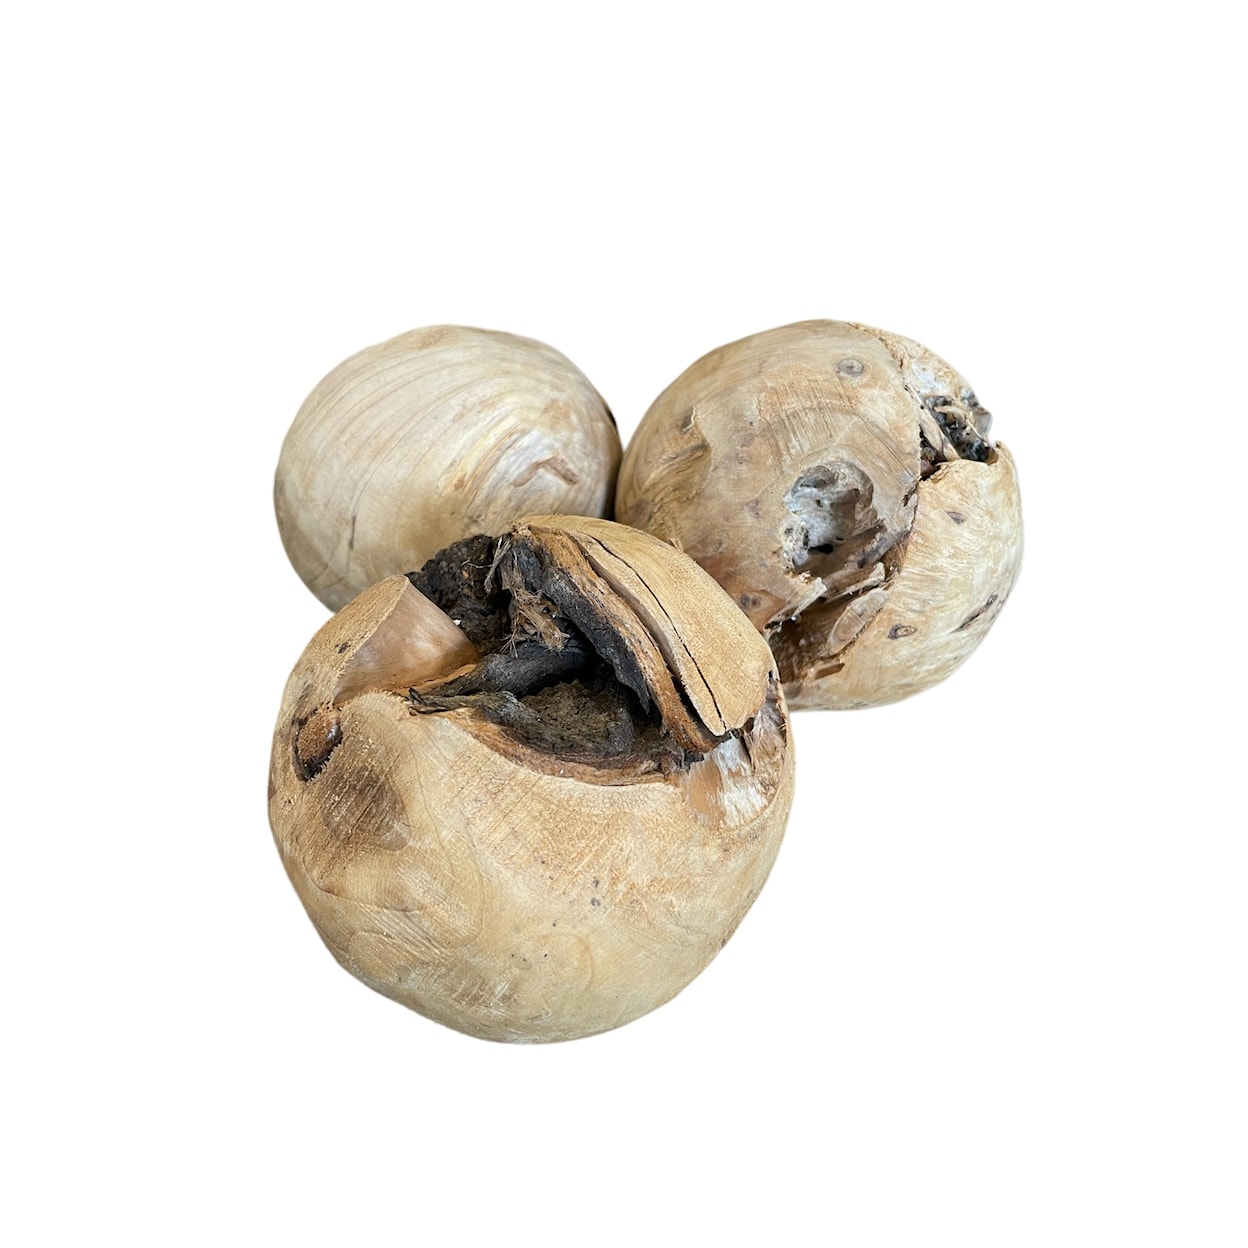 D&W Silks Accessories Set of 3 Wooden Balls